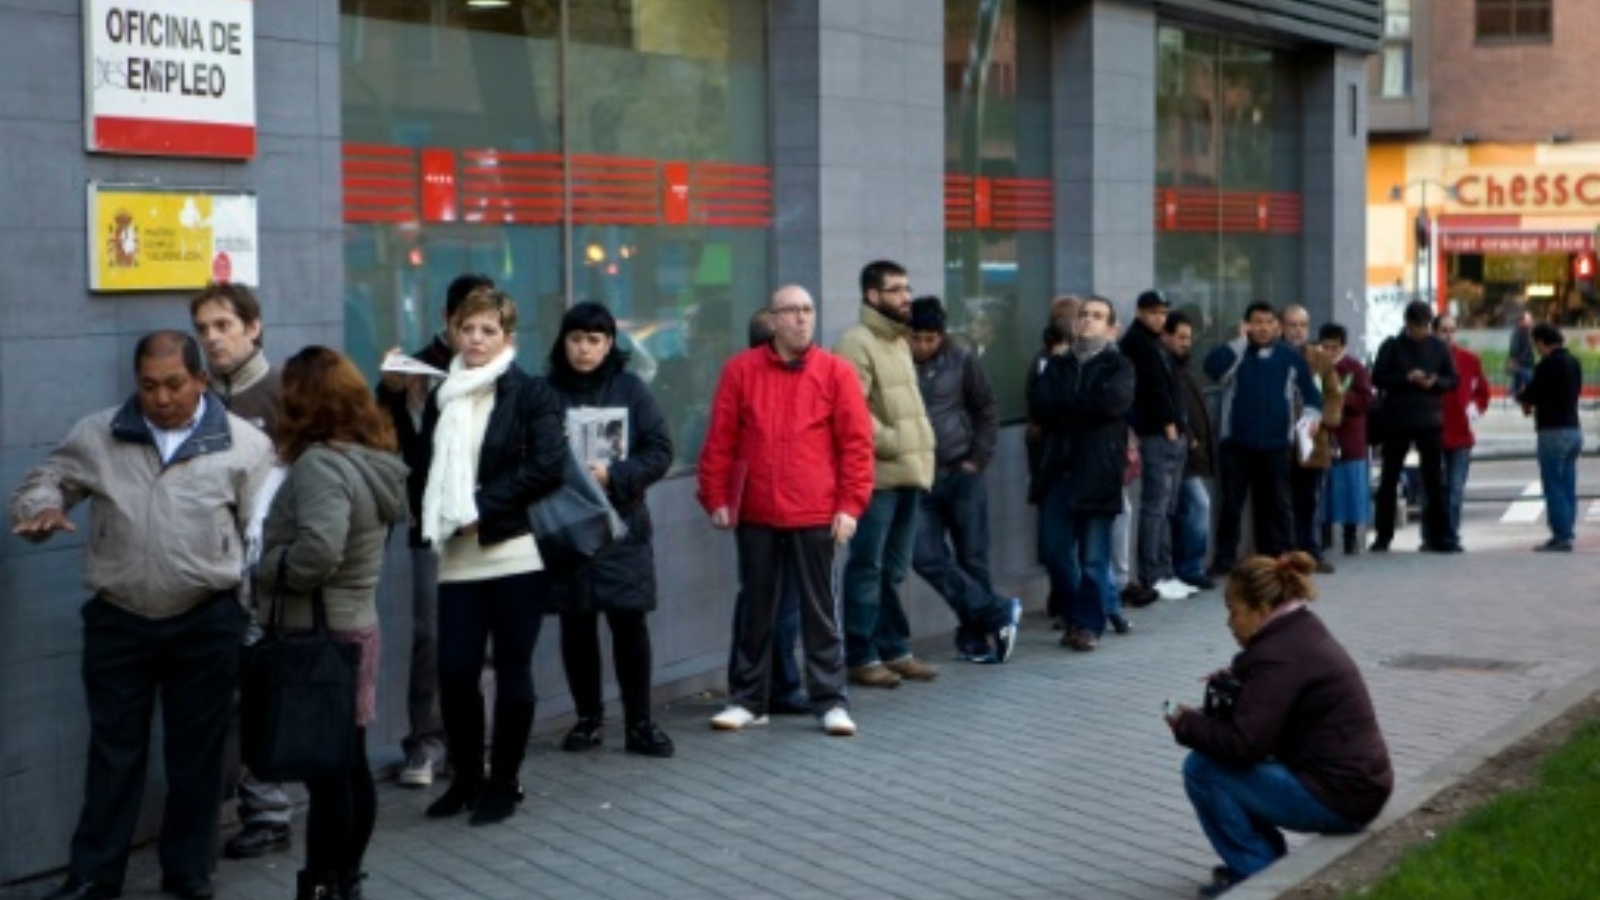 أشخاص يقفون في طابور لتعبئة طلبات وظيفة بعد تحسن في سوق العمل في منطقة اليورو